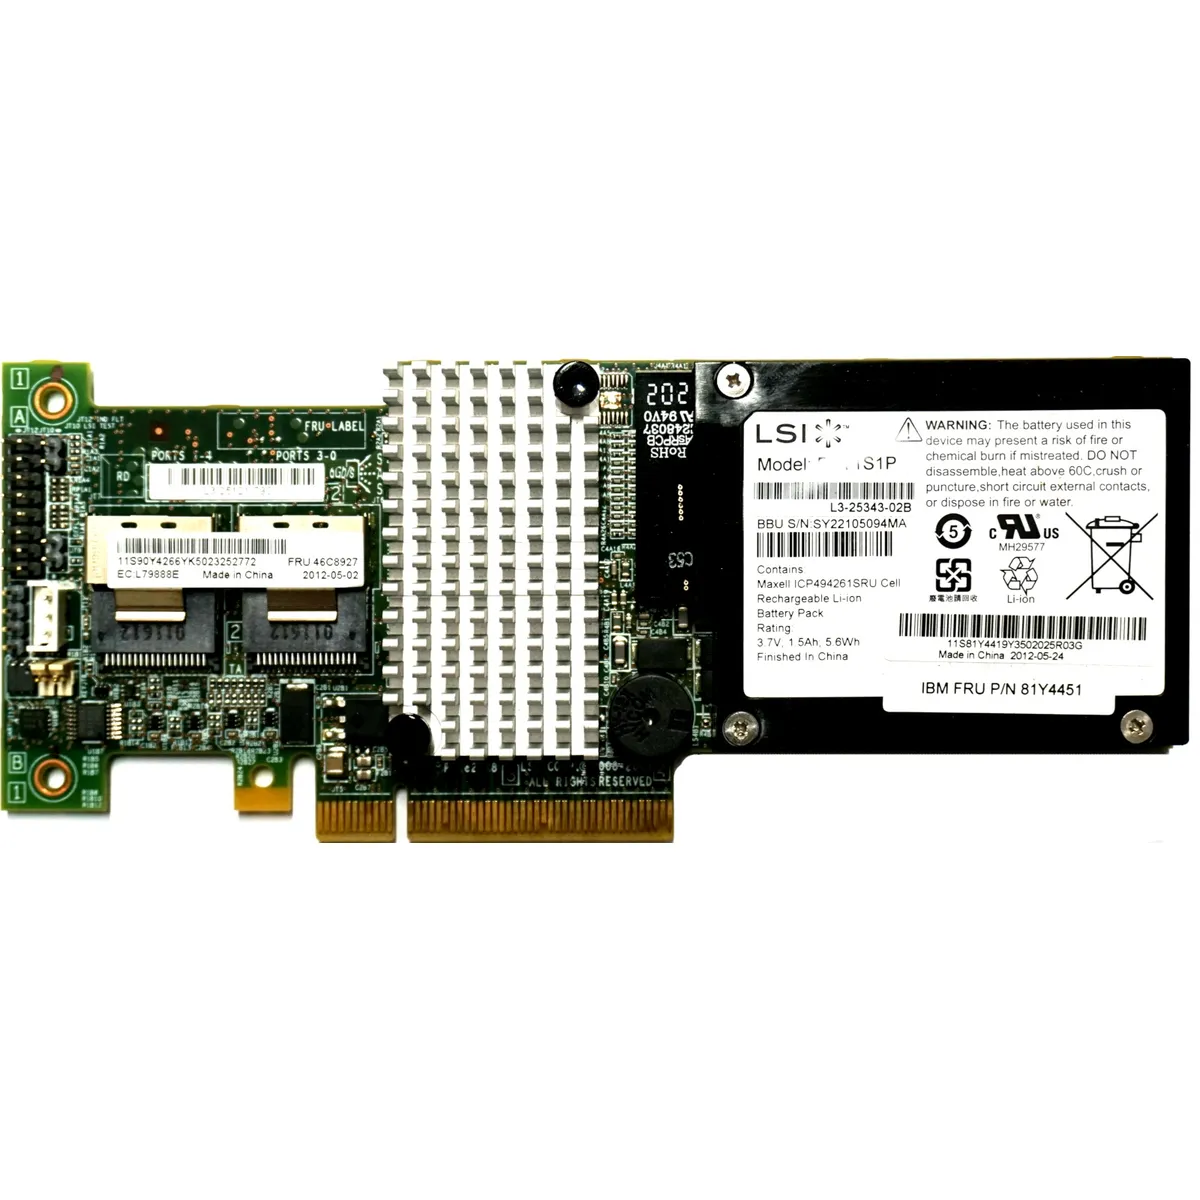 IBM ServeRAID M5015 512MB NV inc. Battery - PCIe-x8 SAS RAID Controller